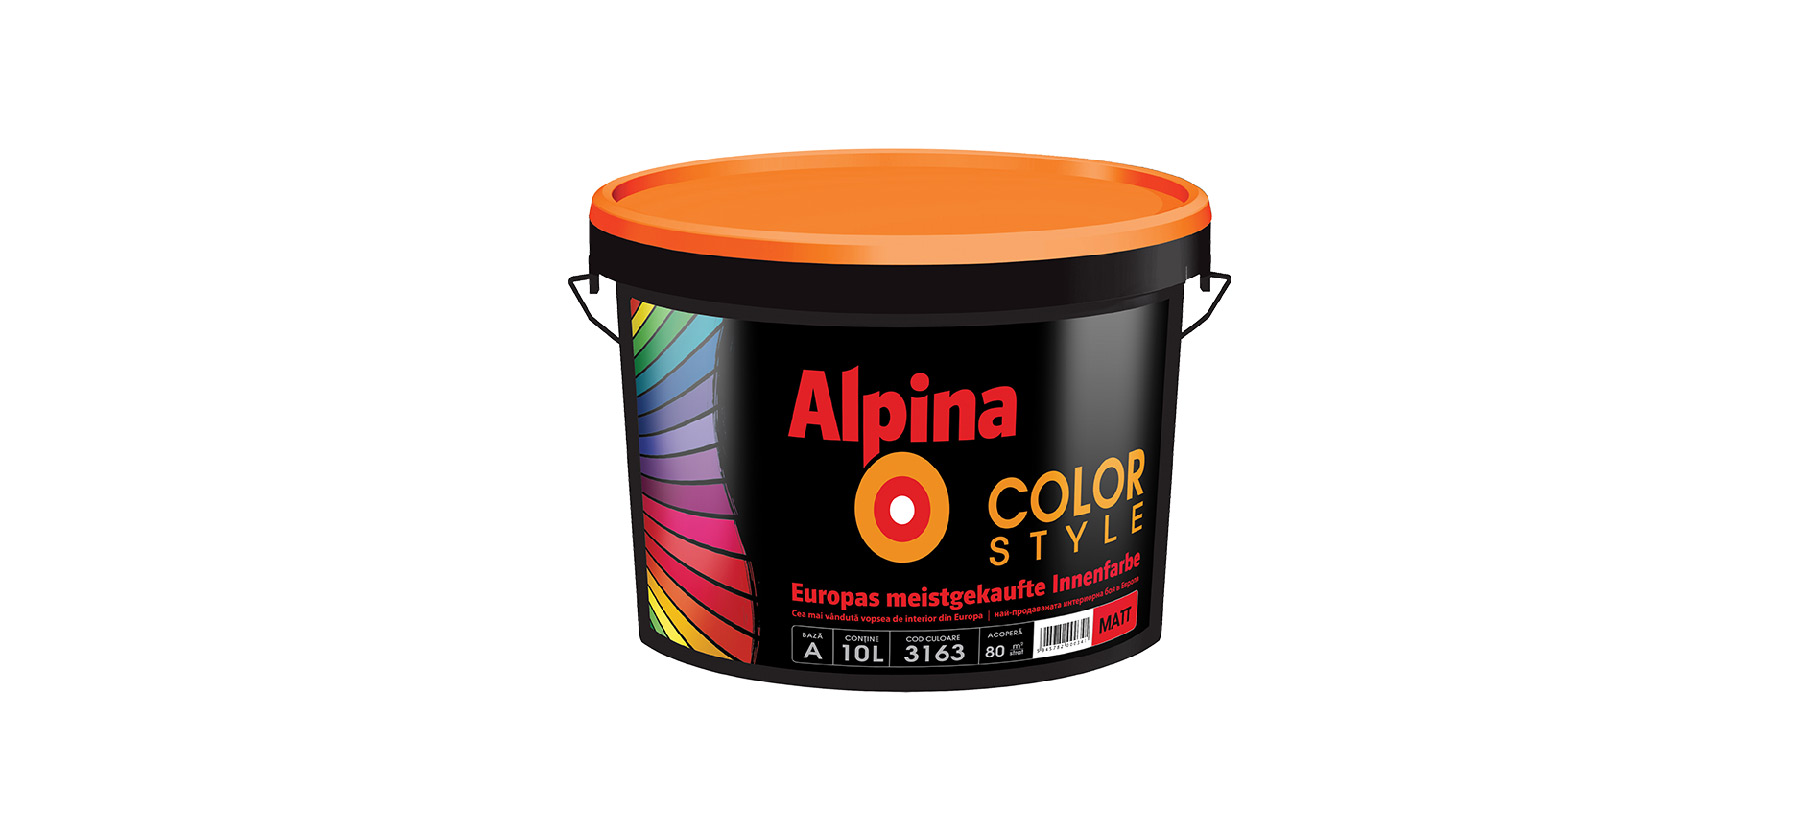 ALpina Color Style